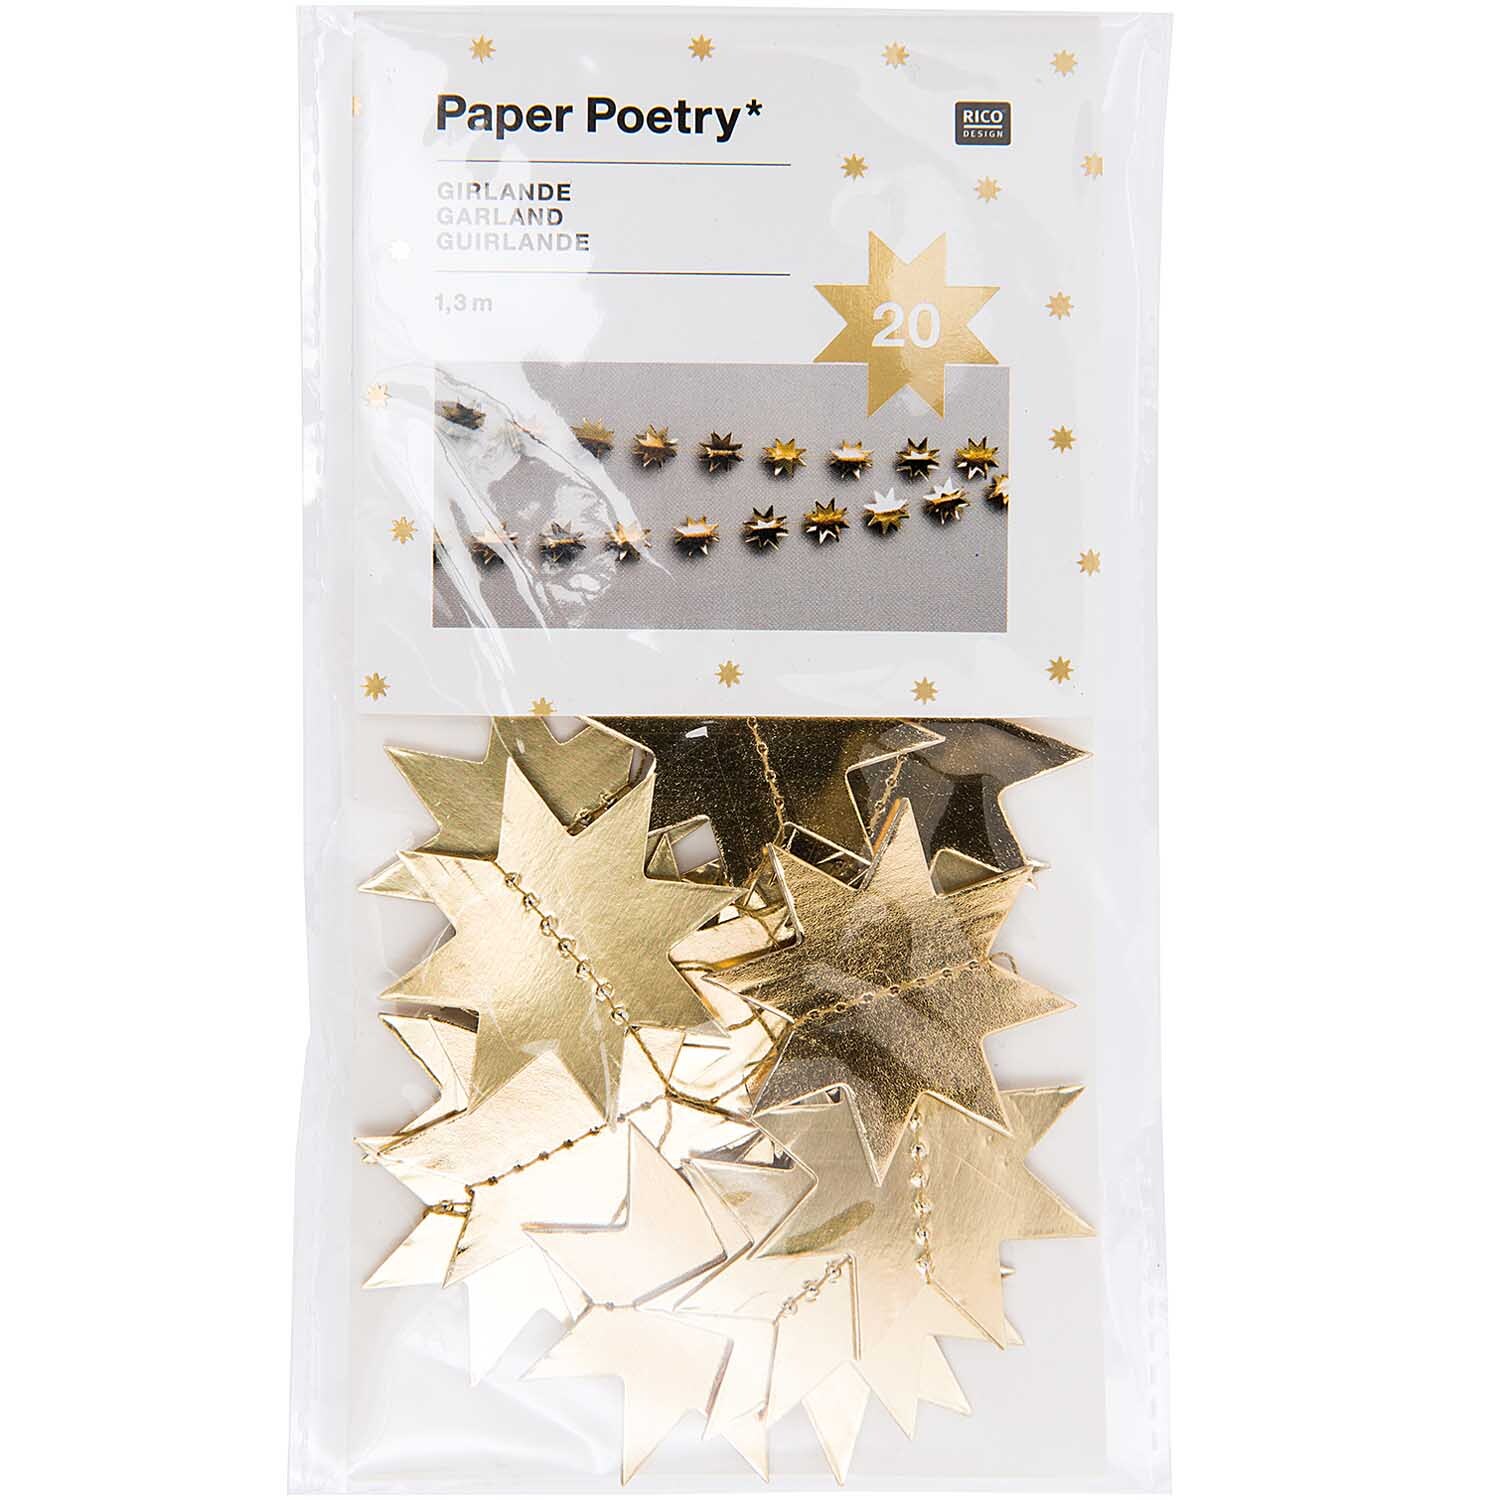 Paper Poetry Girlande Sterne 1,3m Hot Foil